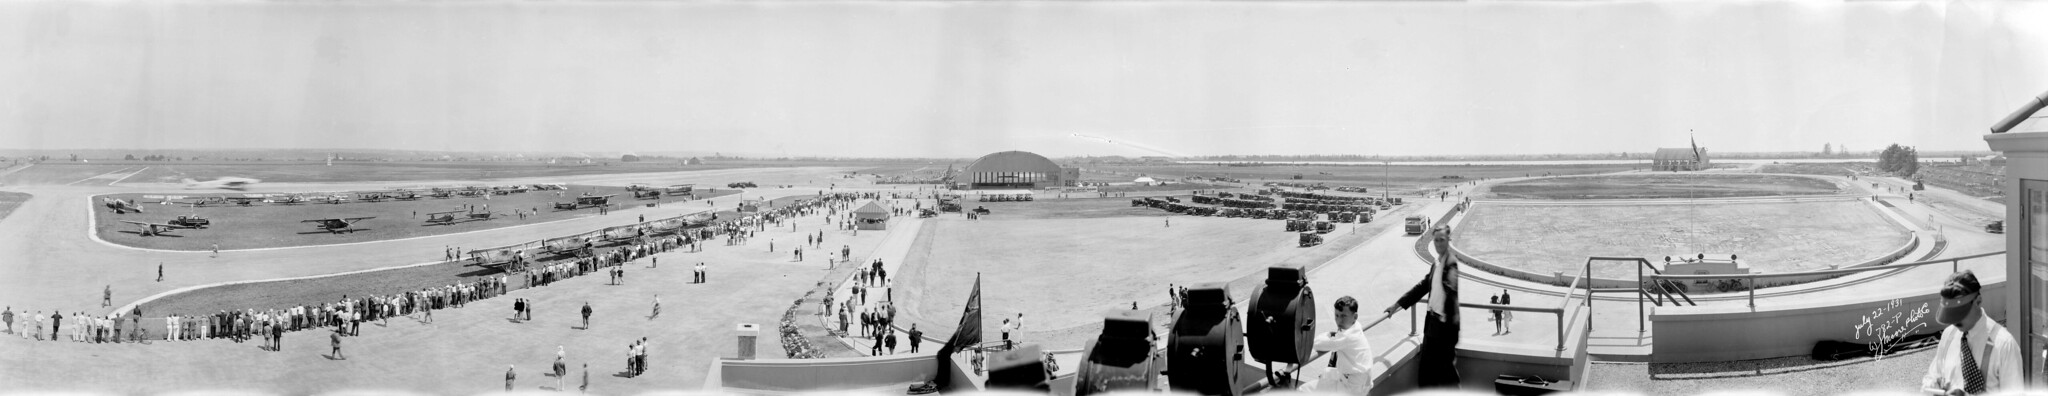 Panorama en blanco y negro de personas alineadas a lo largo de una pista, cerca de varios aviones y un hangar.